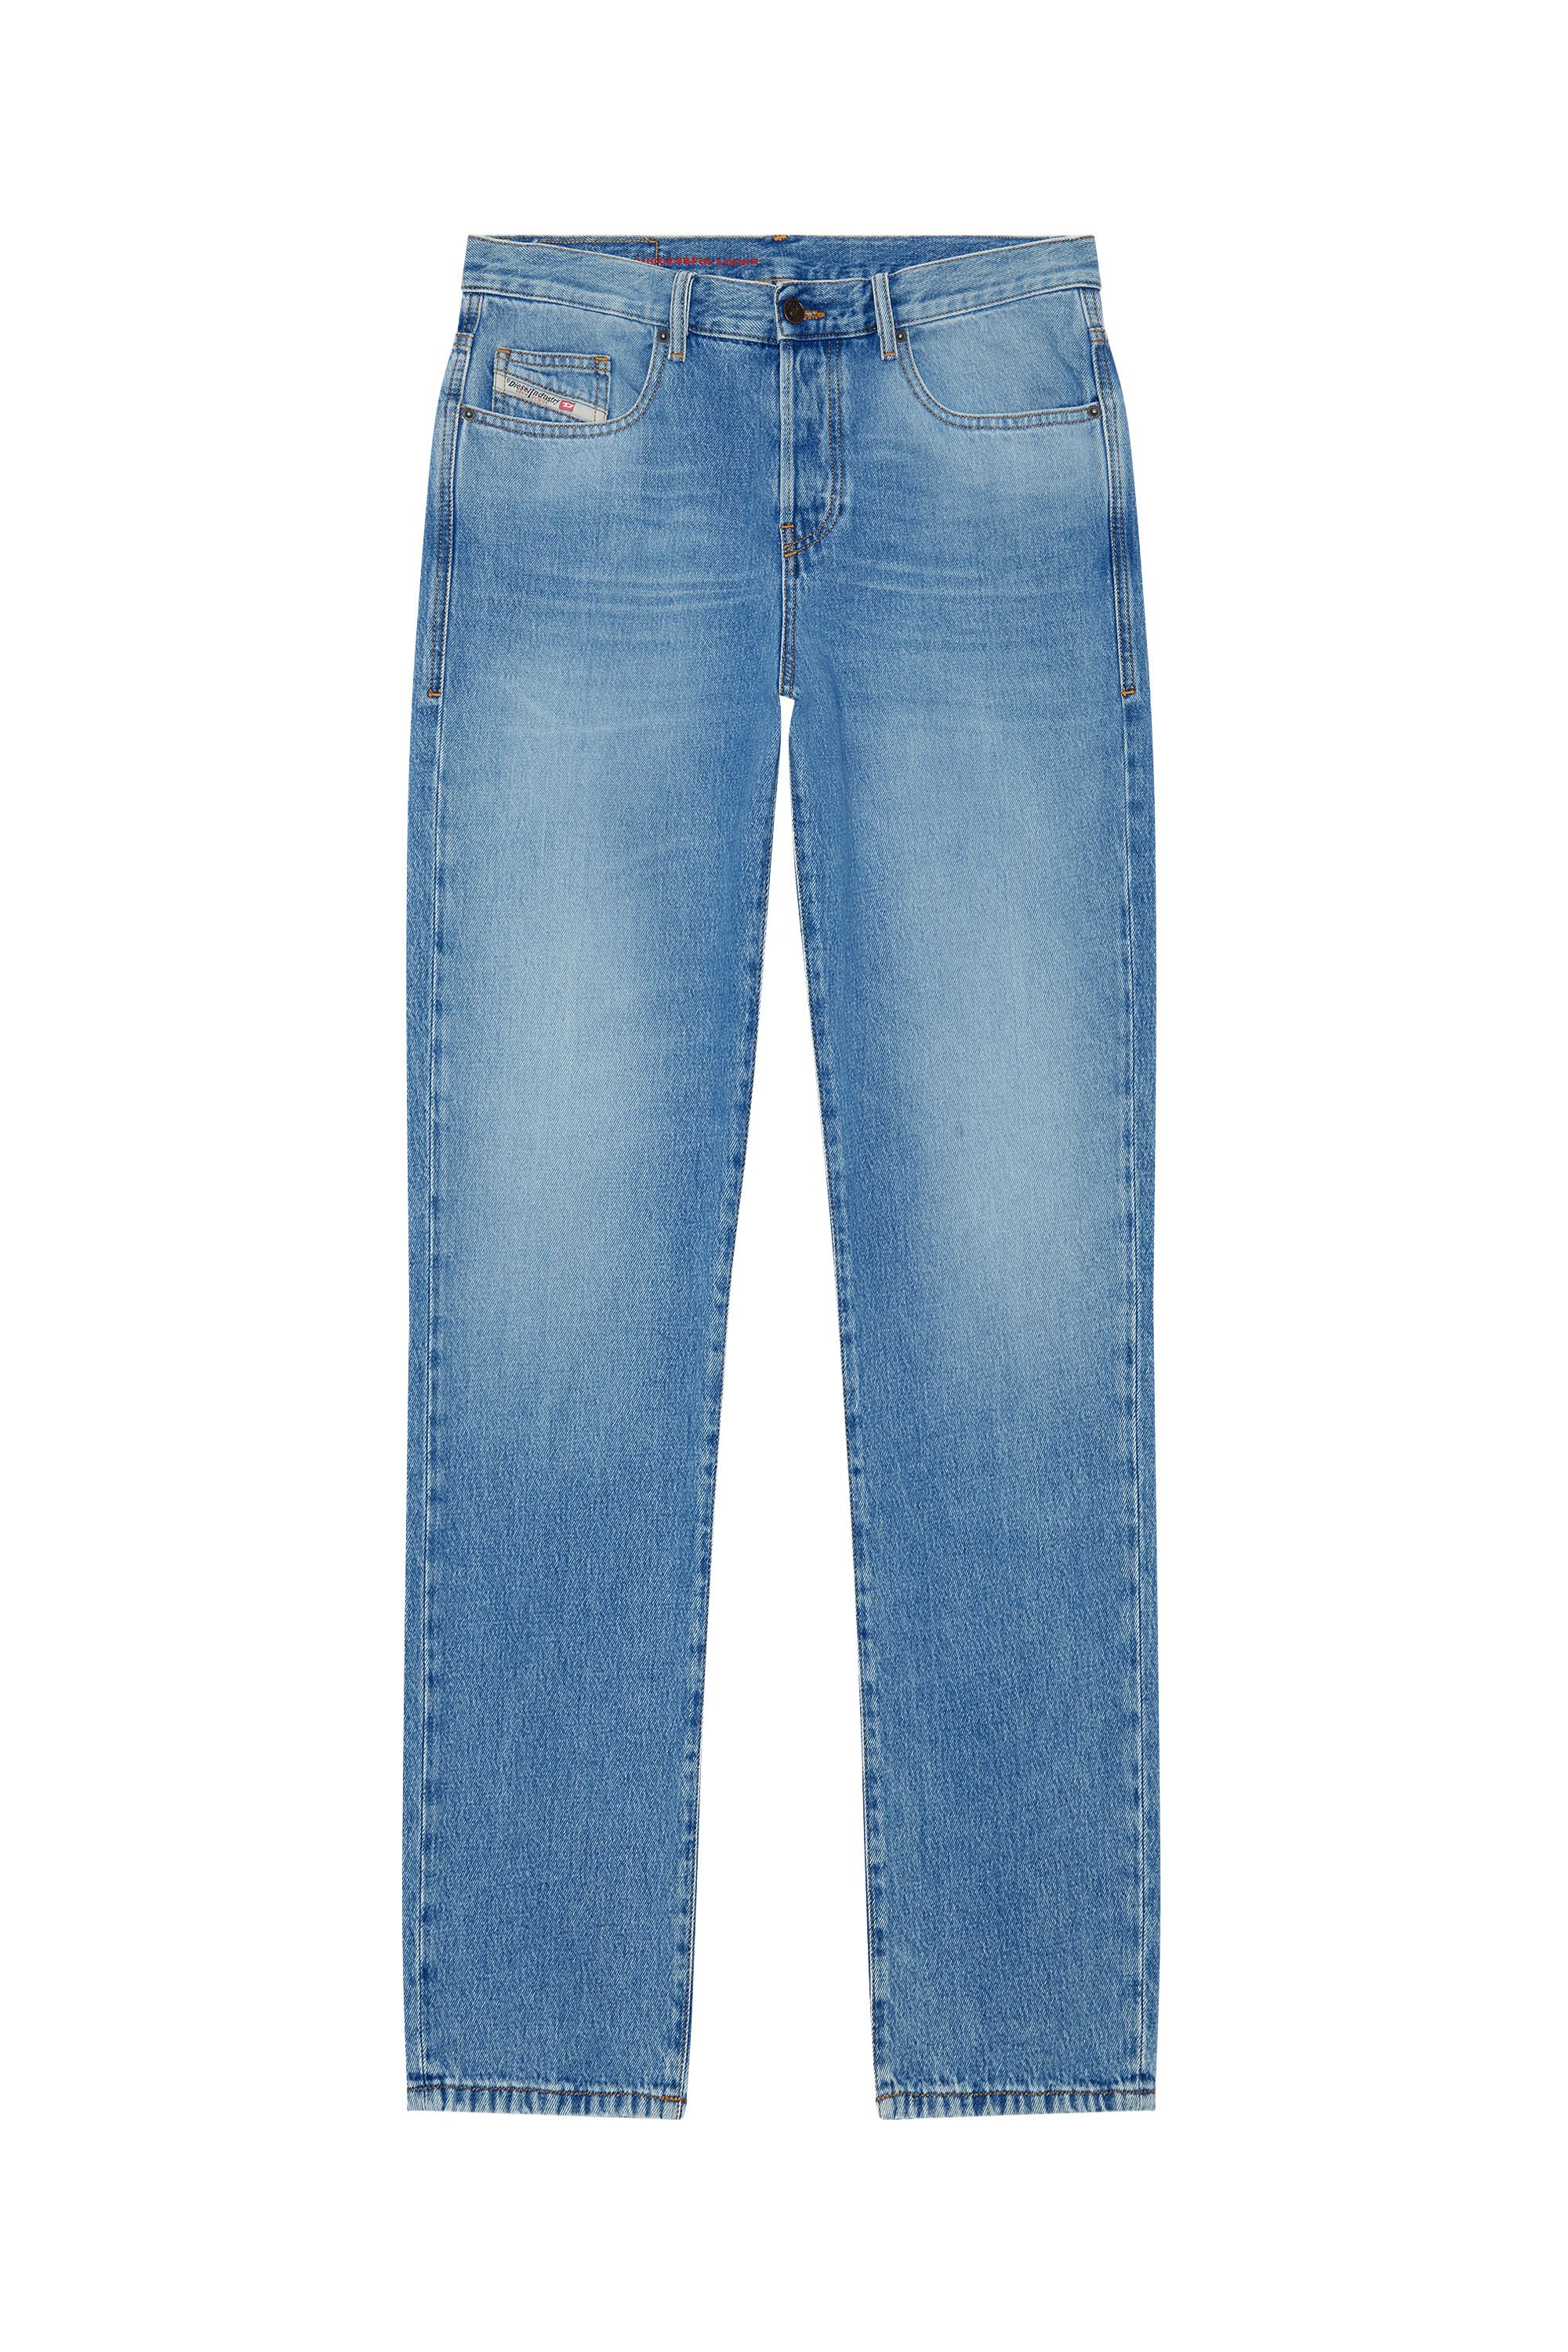 2020 D-Viker 09C15 Straight Jeans, Light Blue